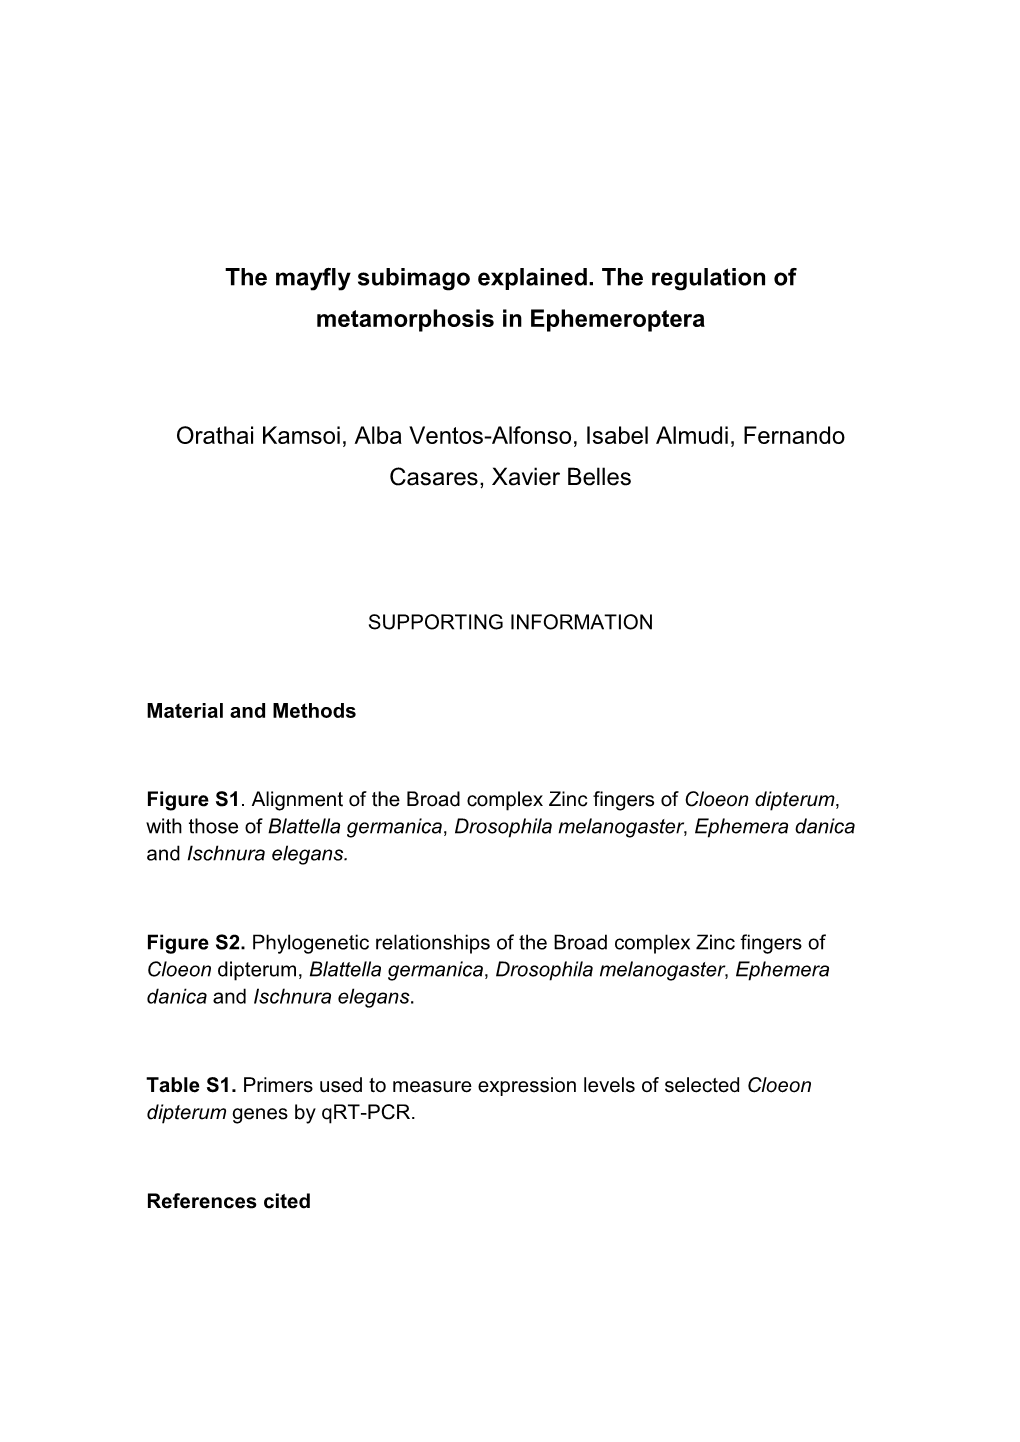 The Mayfly Subimago Explained. the Regulation of Metamorphosis in Ephemeroptera